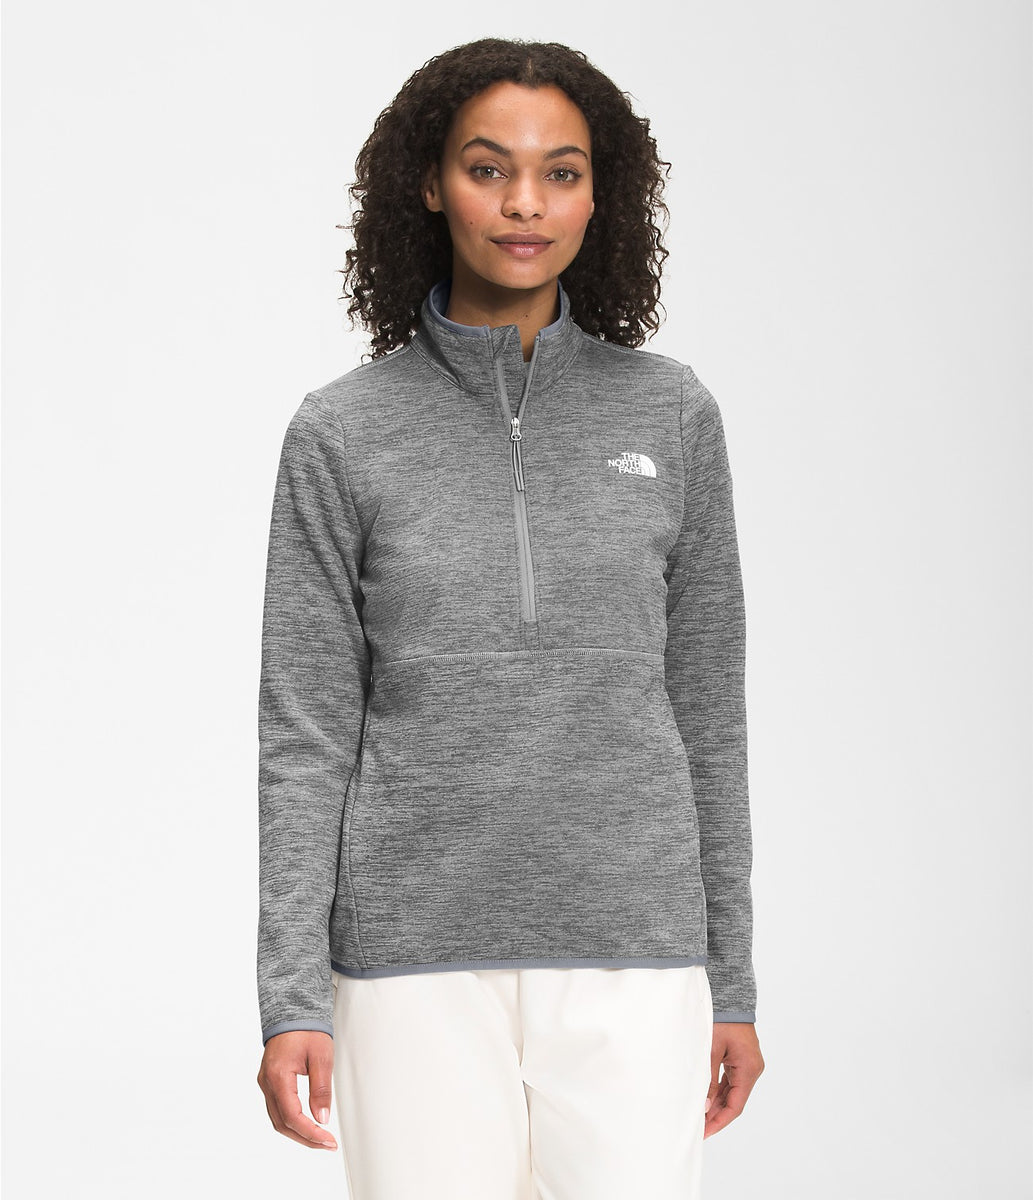 North Face Women's Canyonlands Full-Zip Fleece Jacket – Brine Sporting Goods